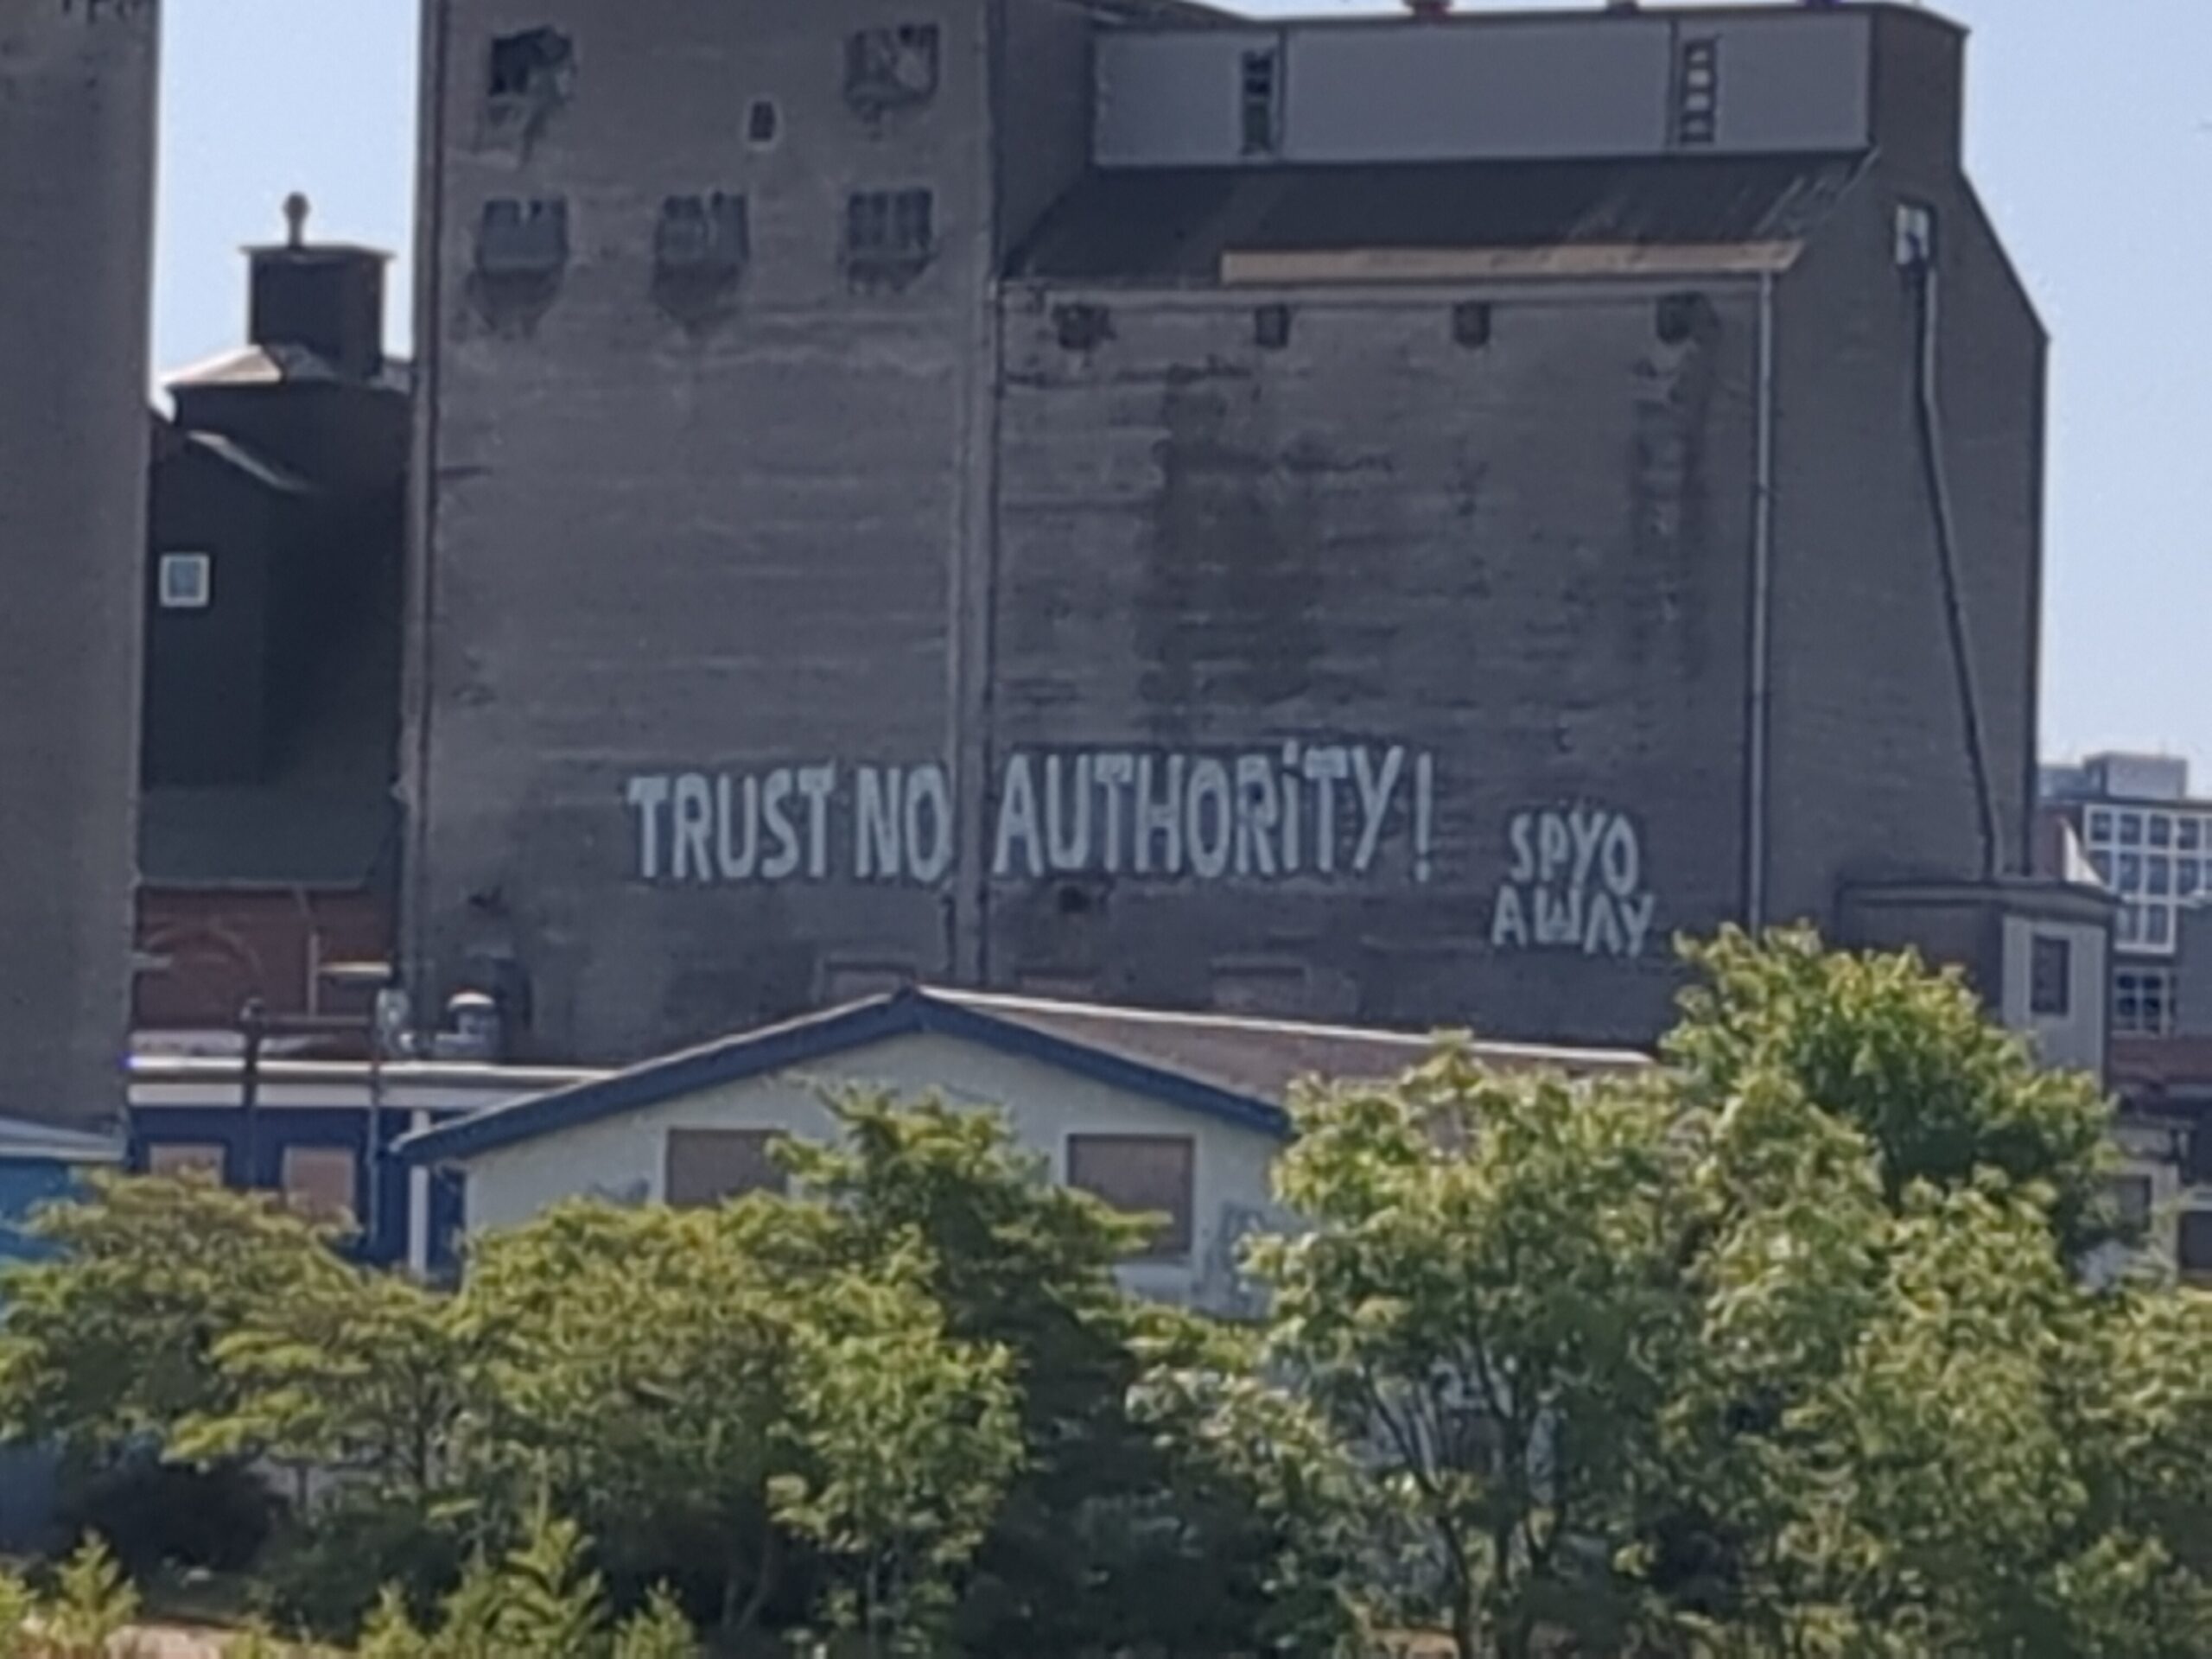 Trust no authority, was soll das heißen?